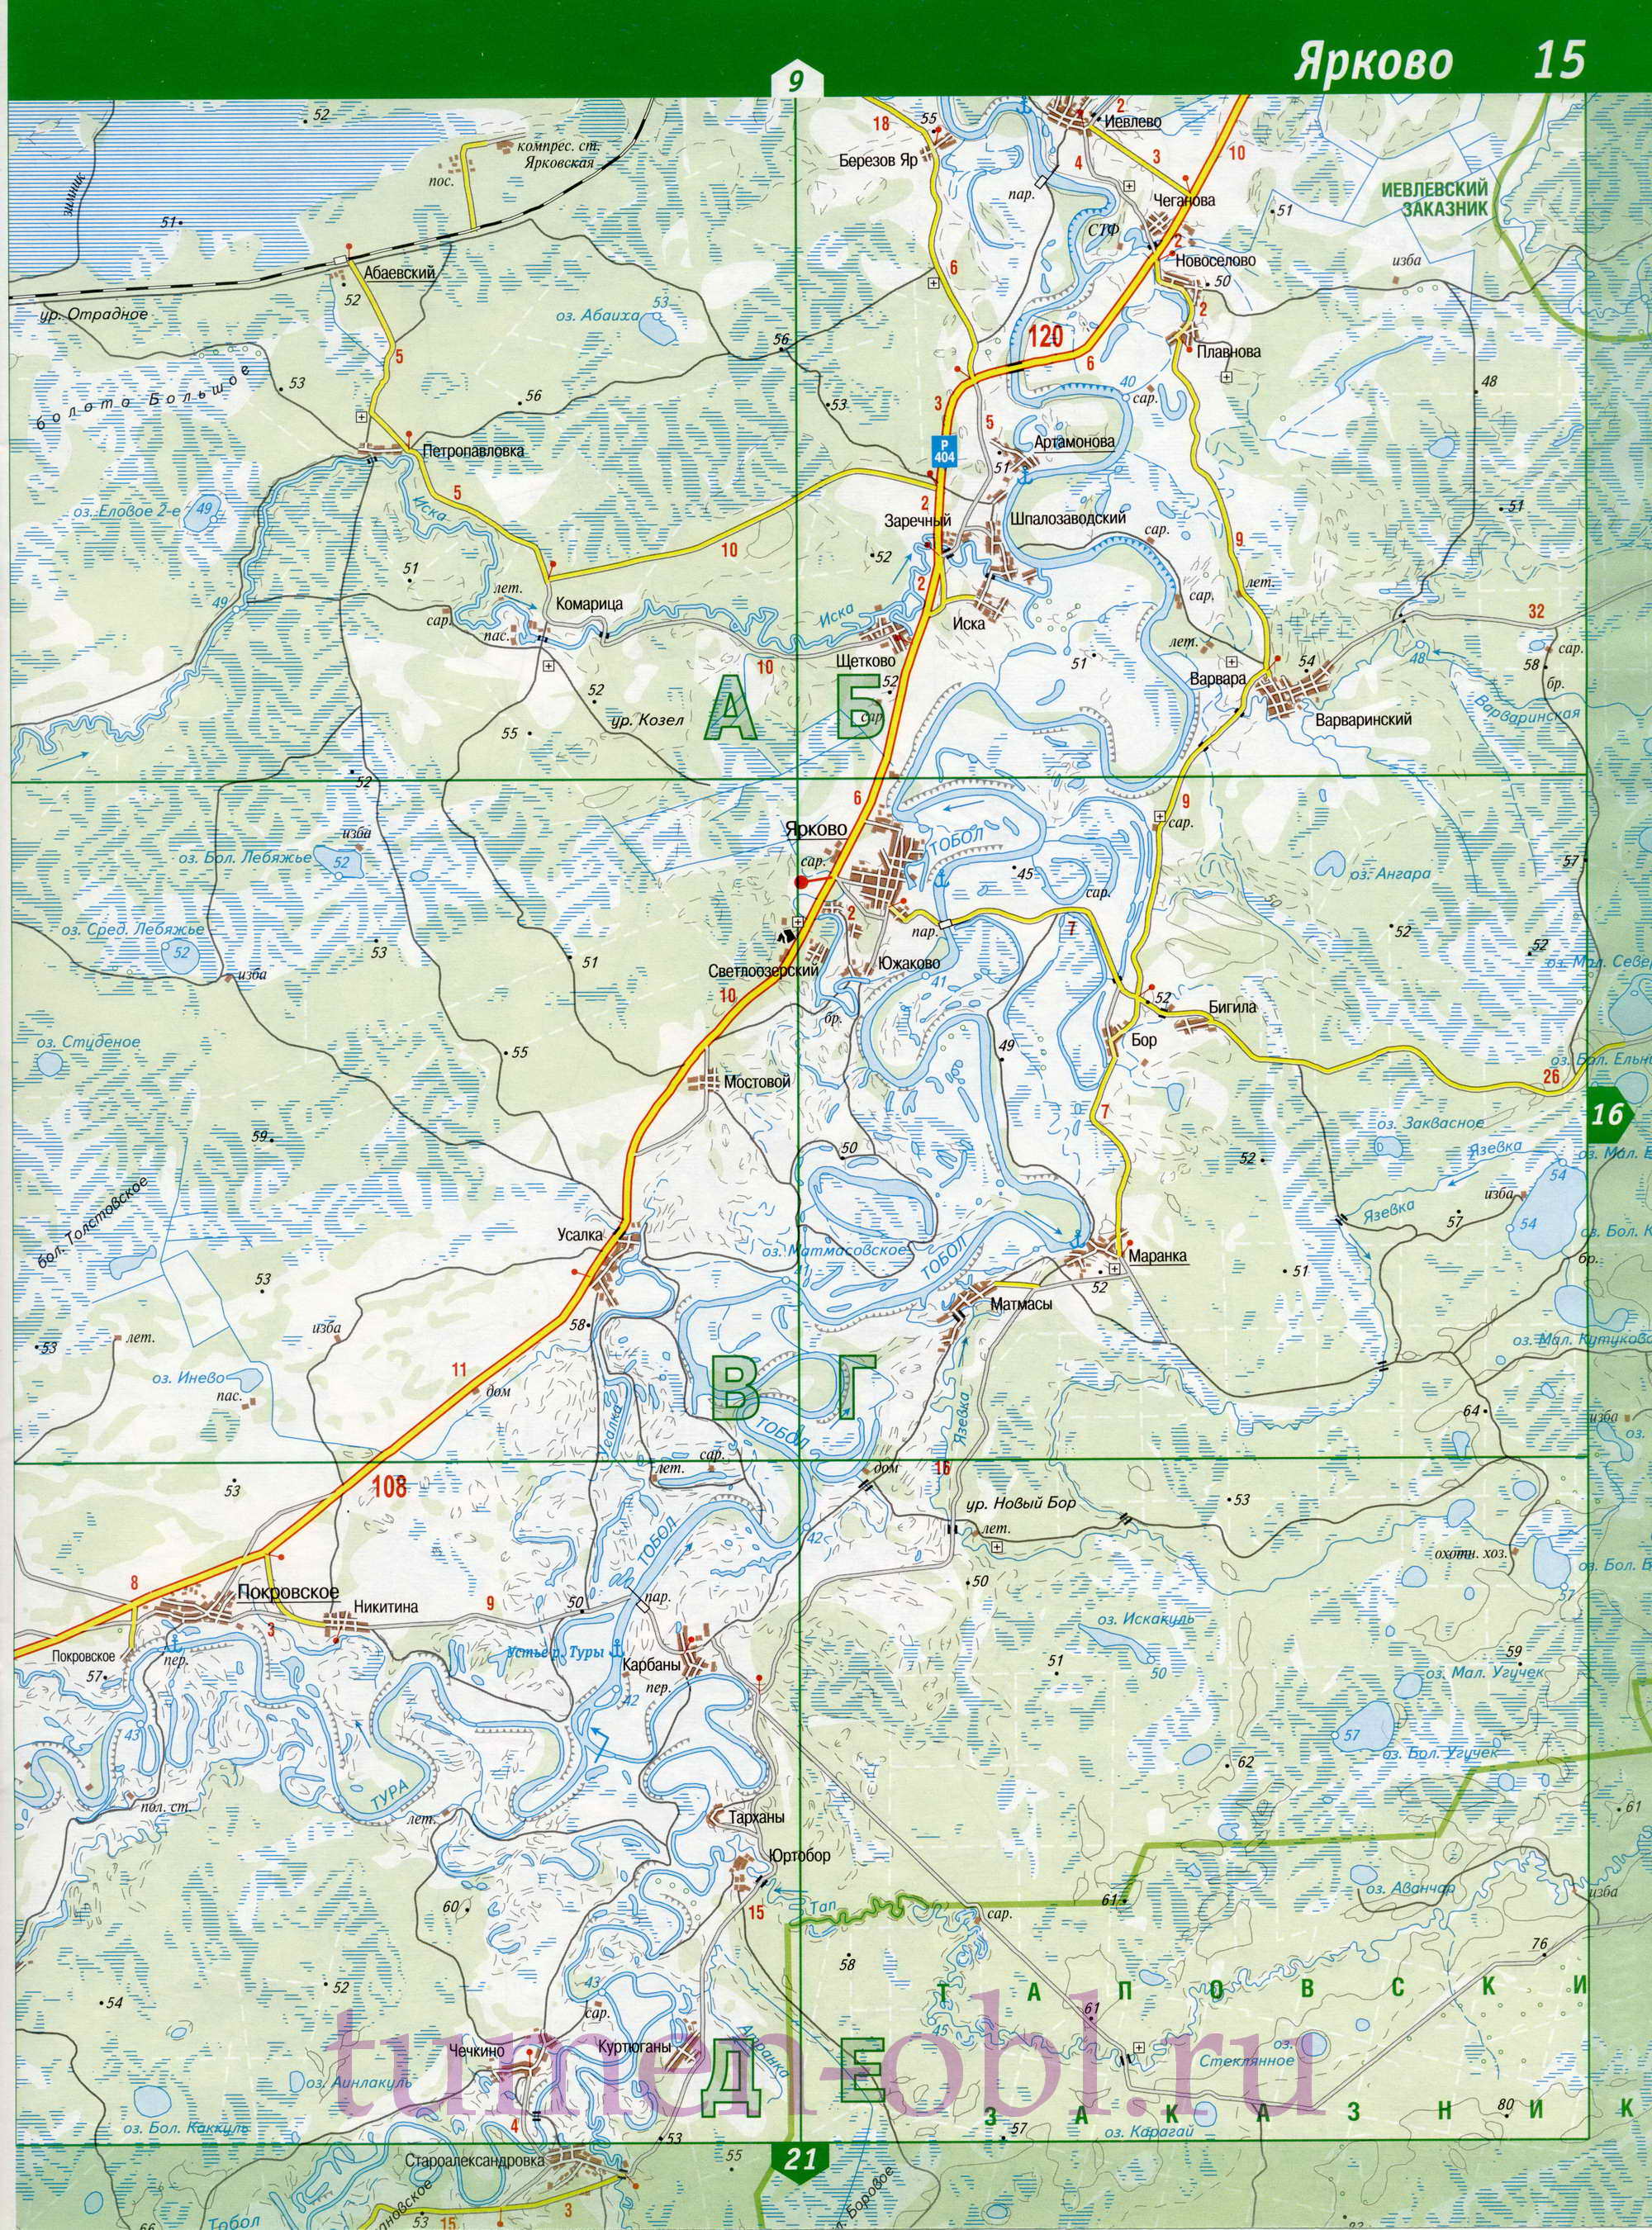 Карта Ярковского района Тюменской области. Подробная топографическая карта - Ярковский район, B0 - 